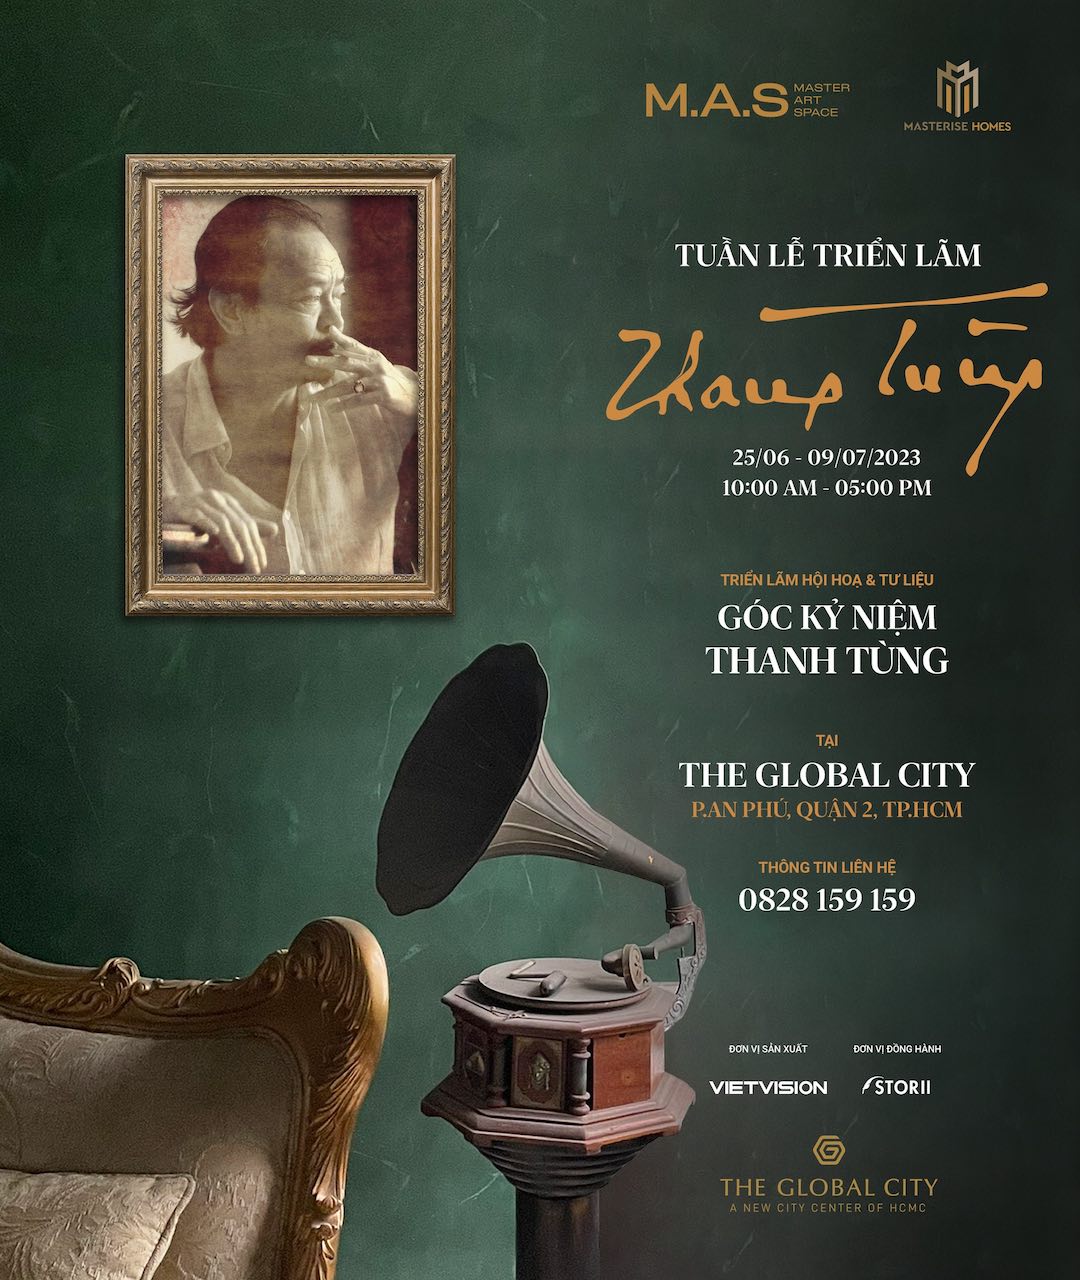 The Global City tổ chức chuỗi sự kiện The Legend Concert 2: Góc kỷ niệm Thanh Tùng